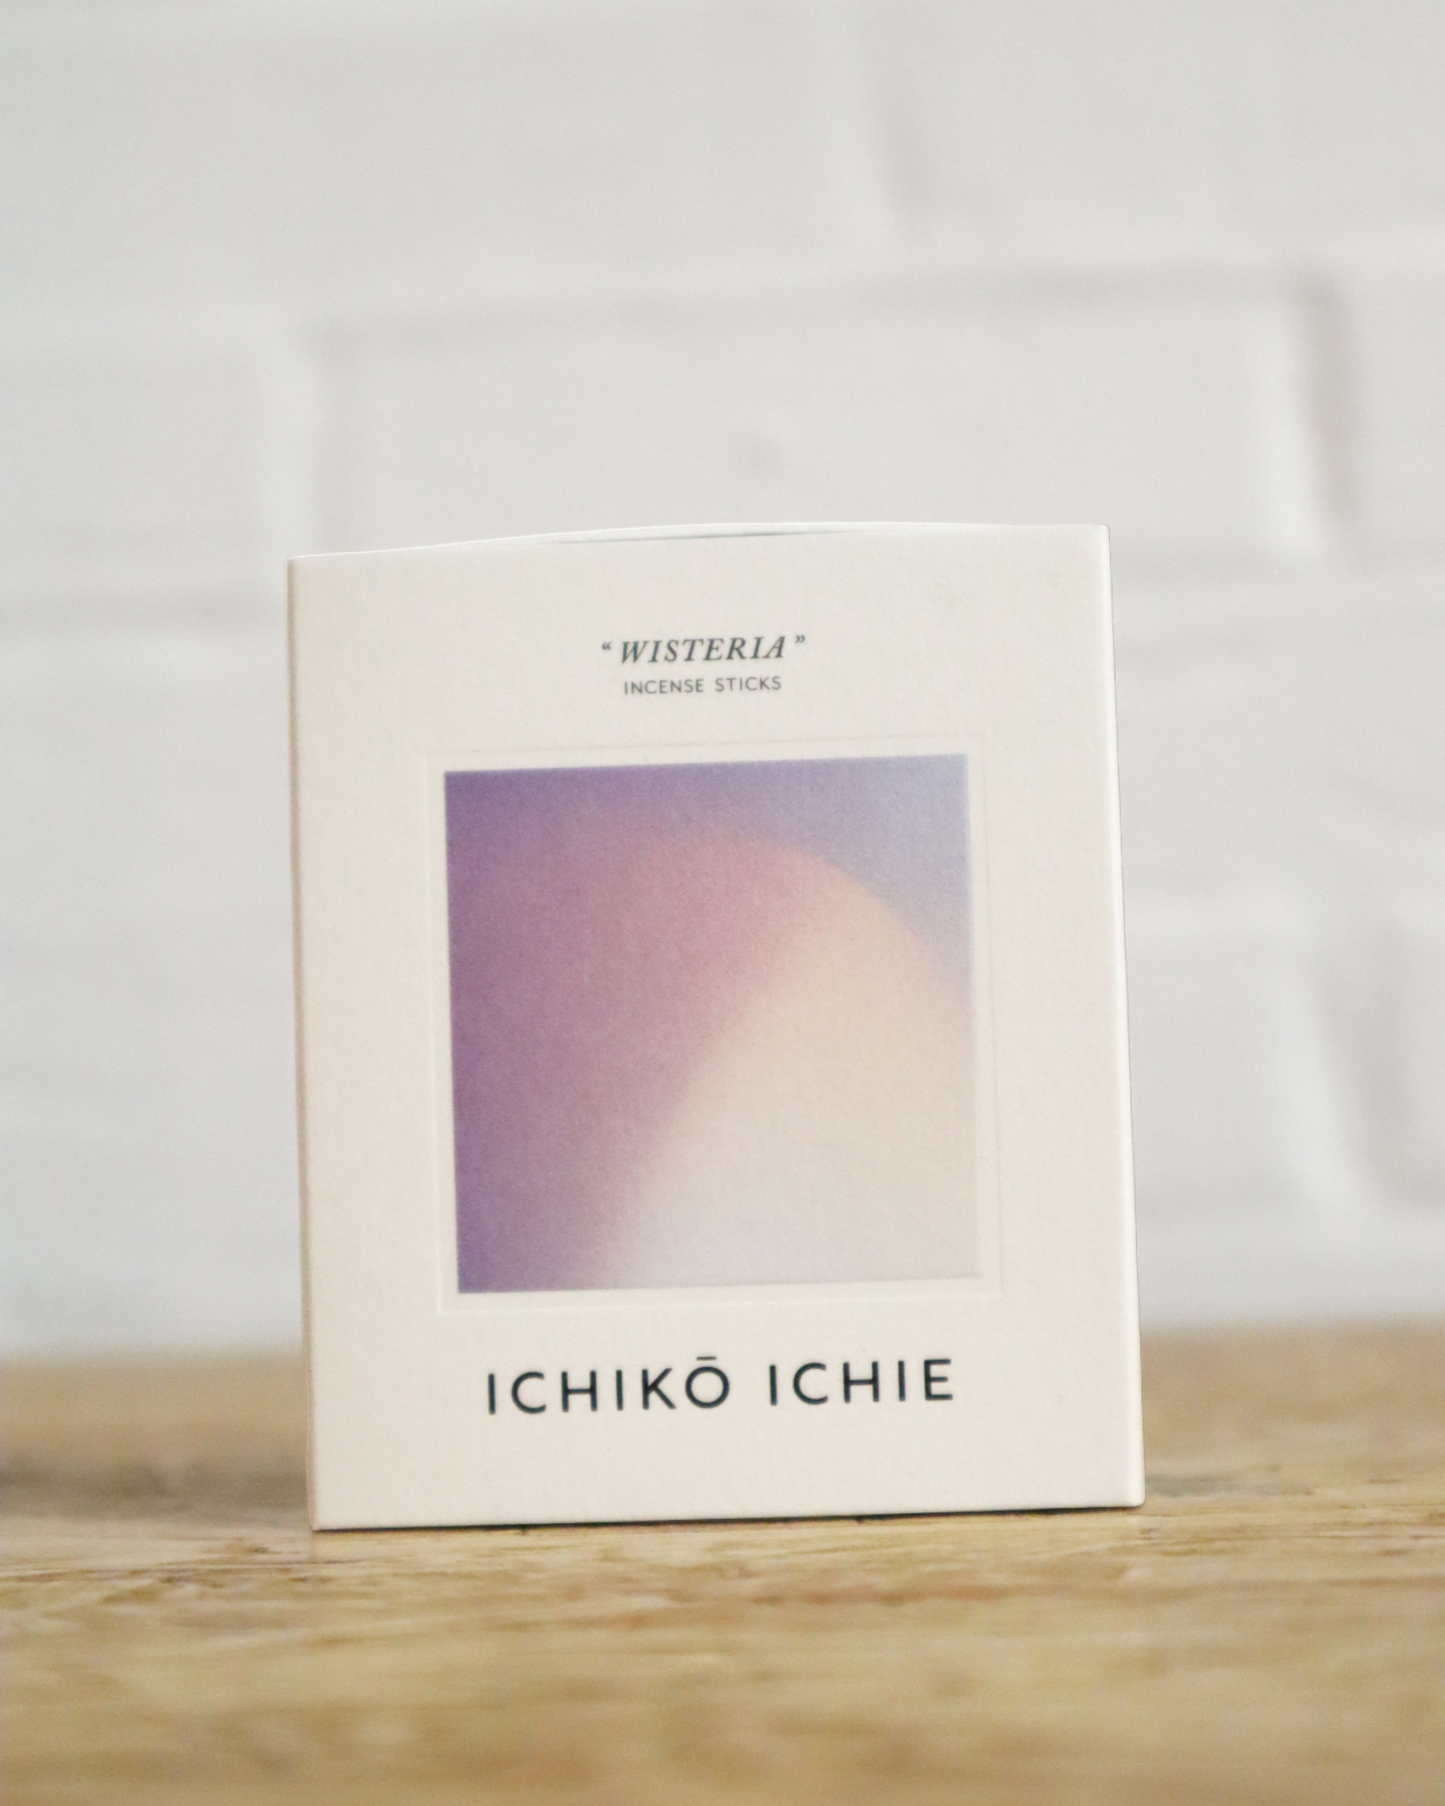 
                  
                    ICHIKO ICHIE Incense "WISTERIA"
                  
                